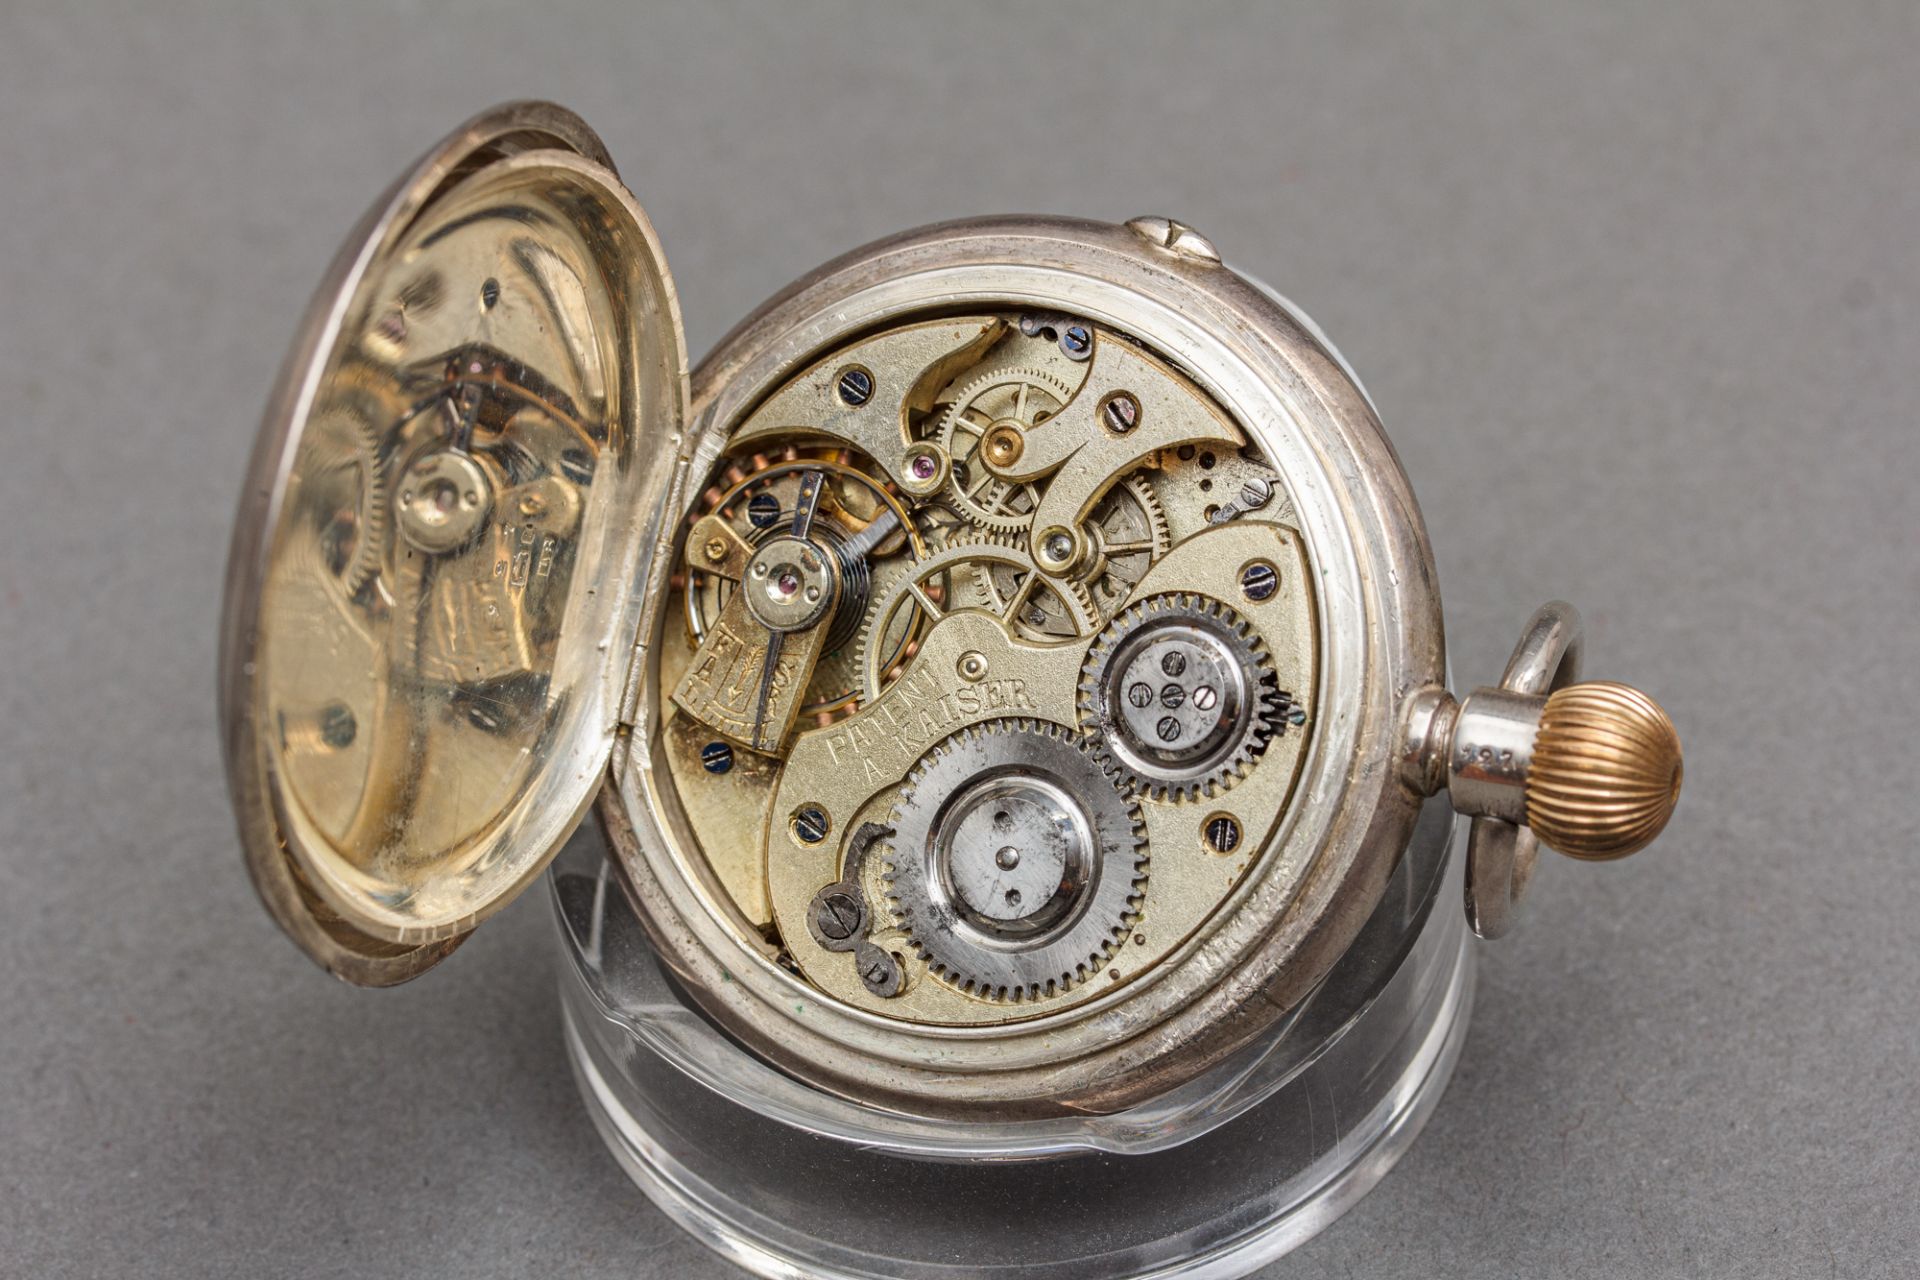 Silbertaschenuhr mit springender Stunde und Minute, Systeme A. Kaiser Brevete, 1897 - Bild 4 aus 5